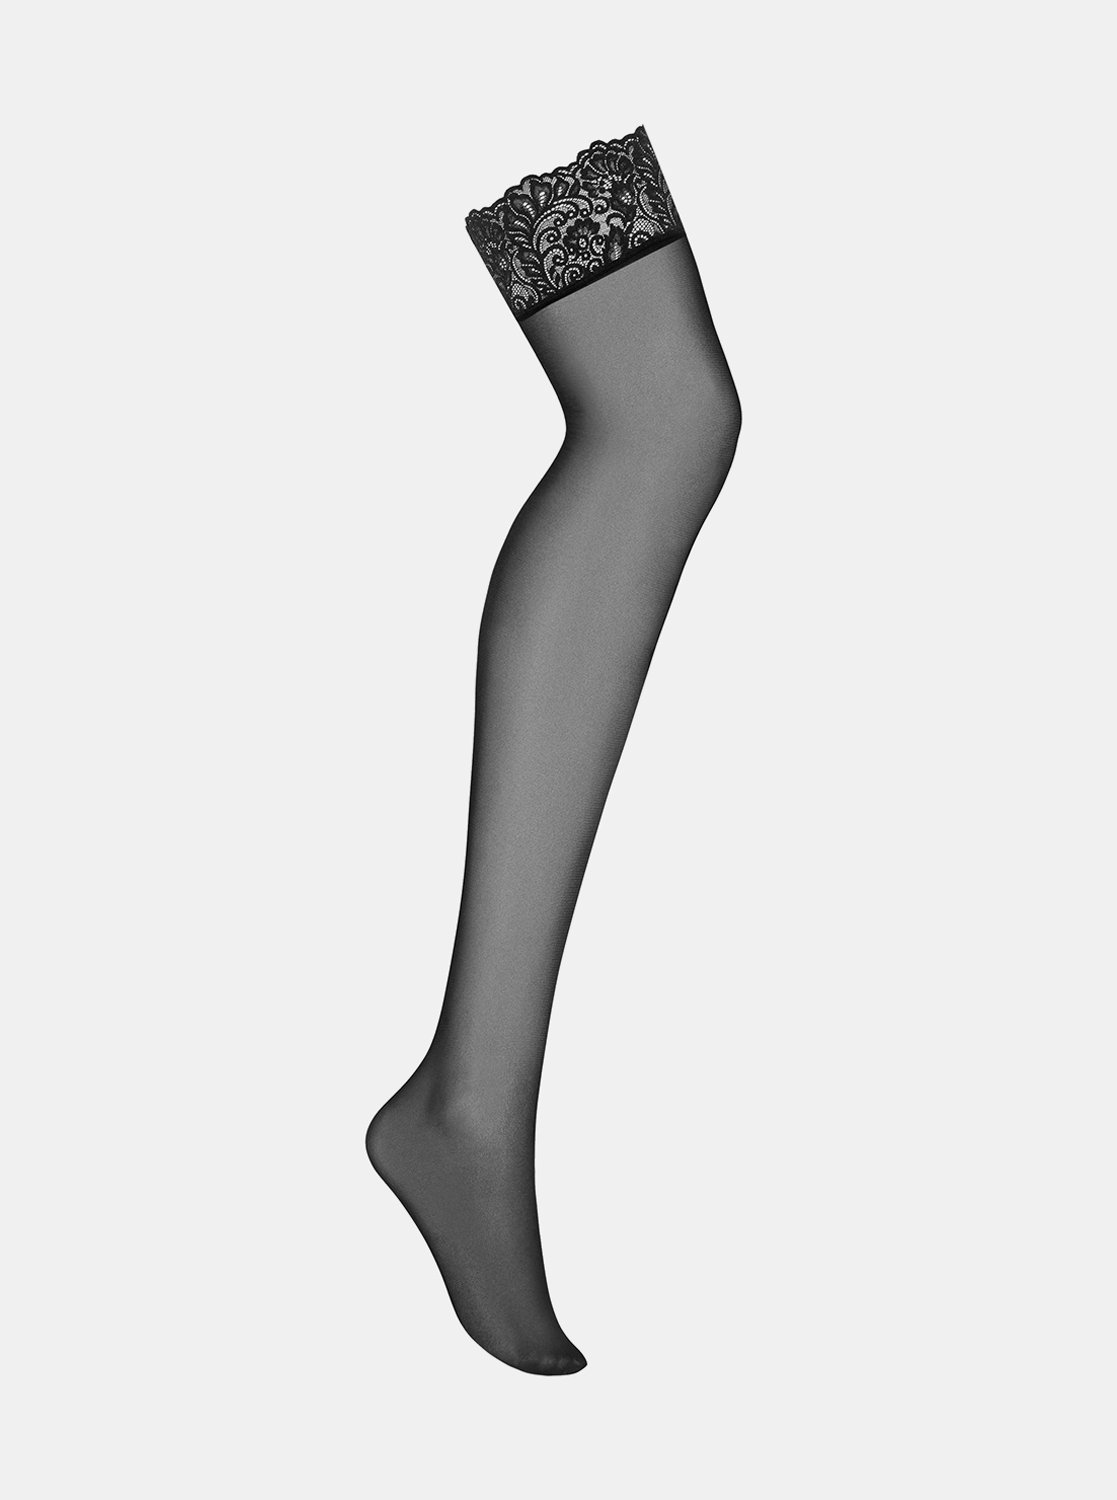 Jemné punčochy Bondea stockings - Obsessive černá